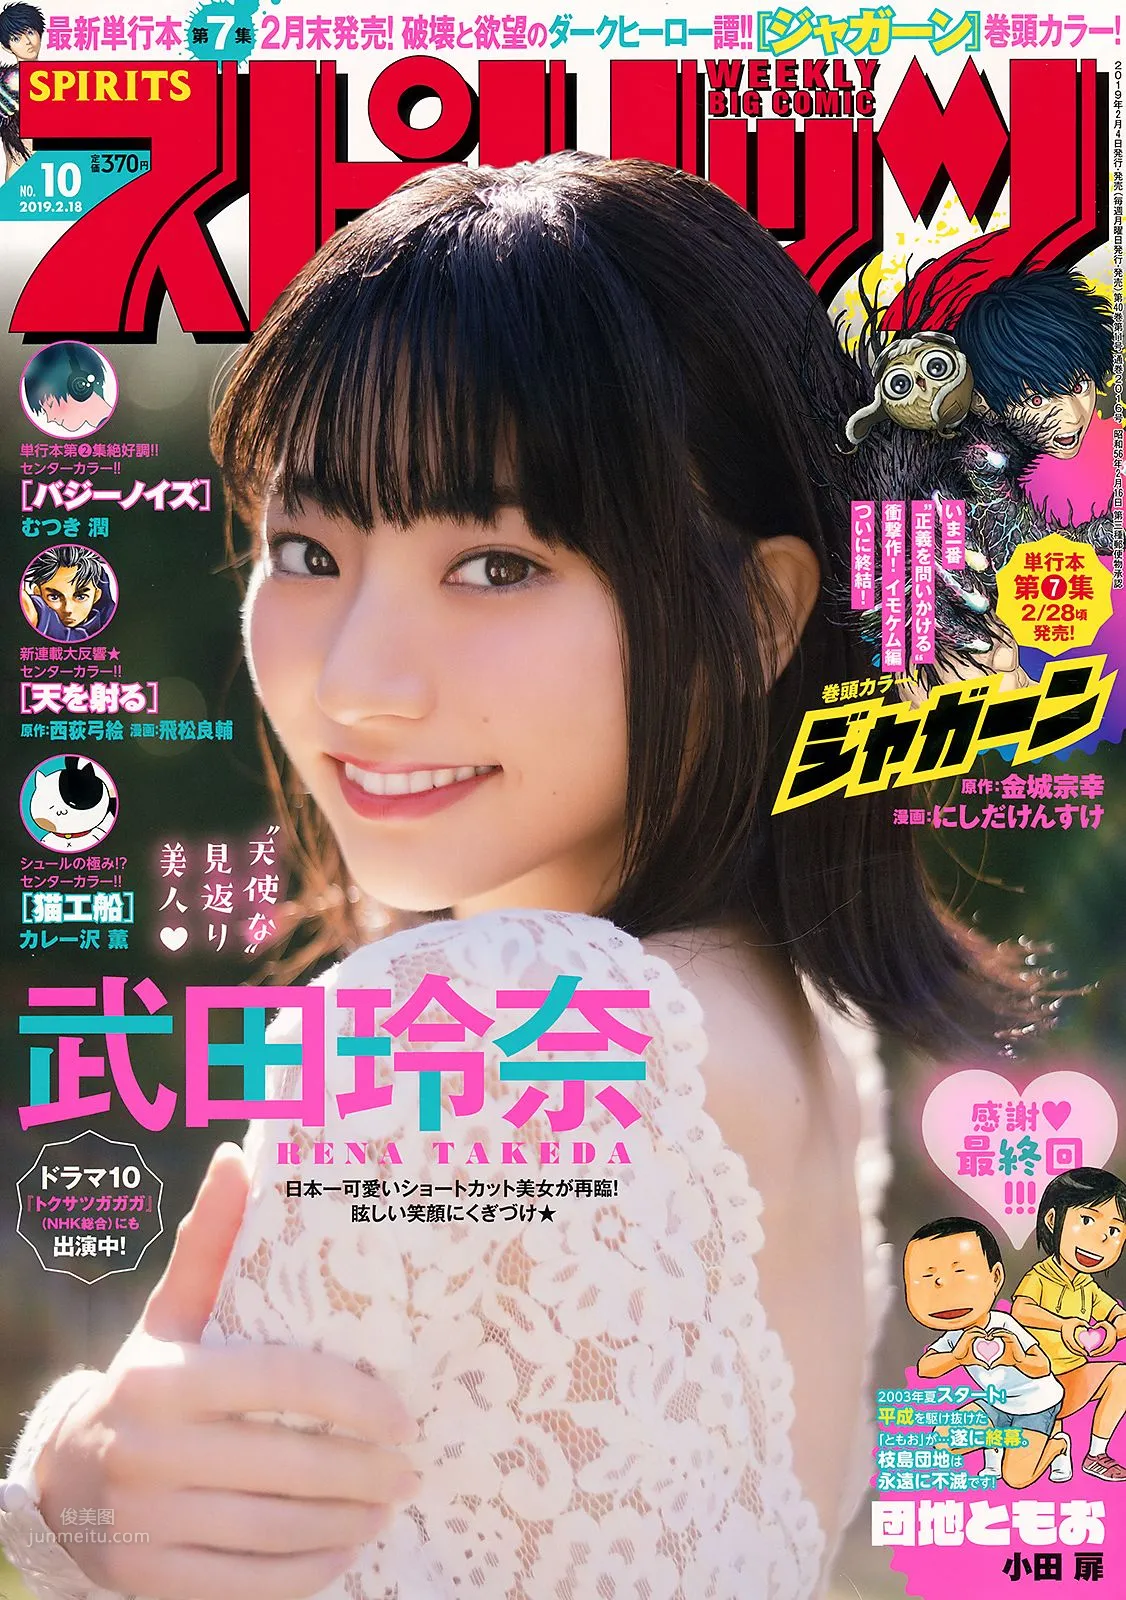 武田玲奈, Rena Takeda - Big Comic Spirits, FRIDAY GOLD, Weekly Playboy, 2019_11